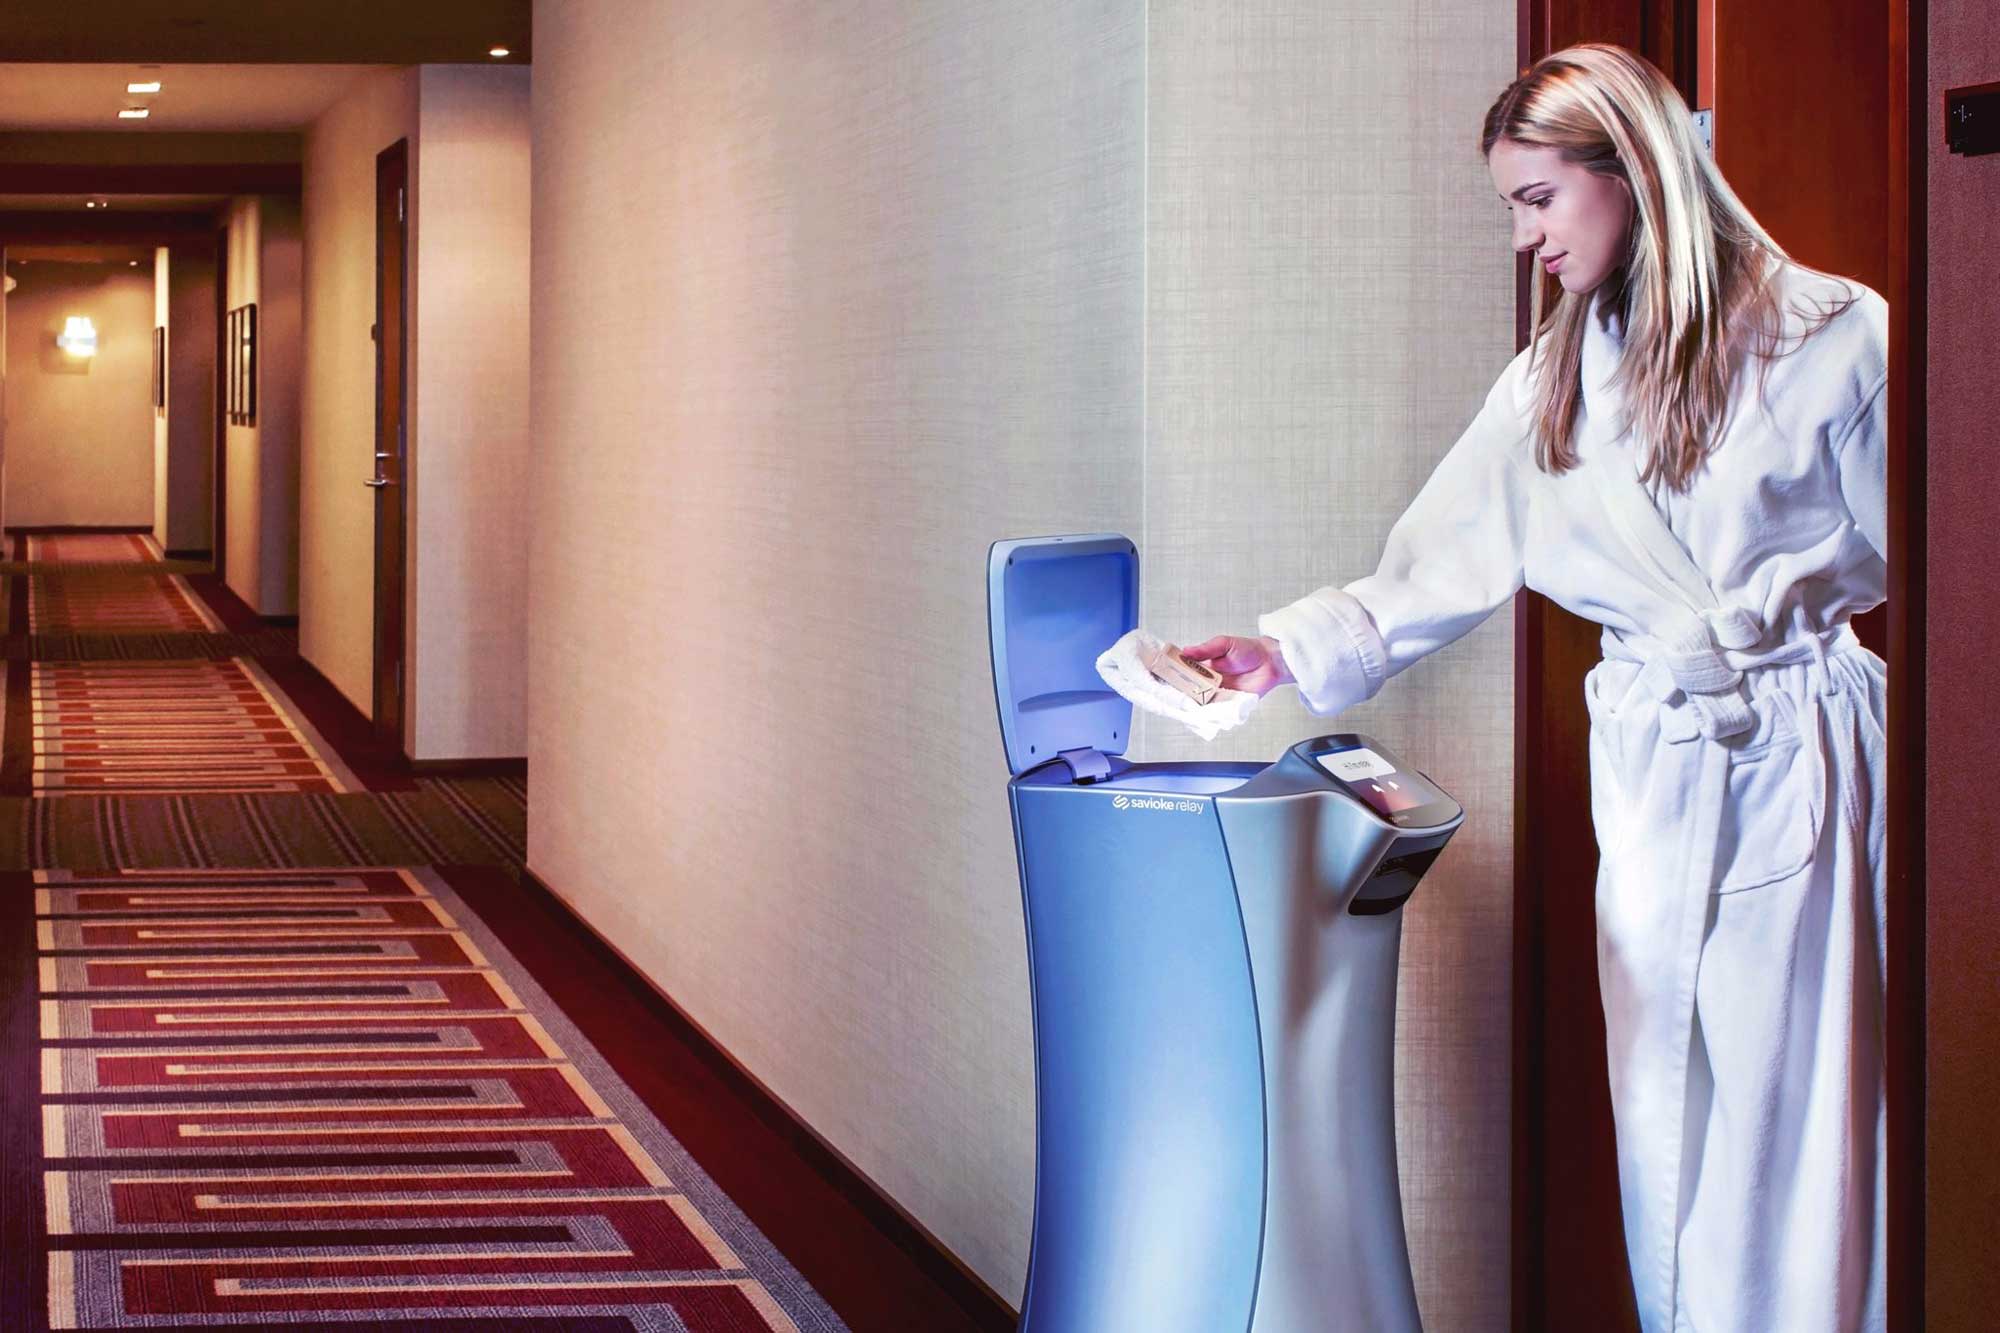 Amenities - robotska posluga u hotelu